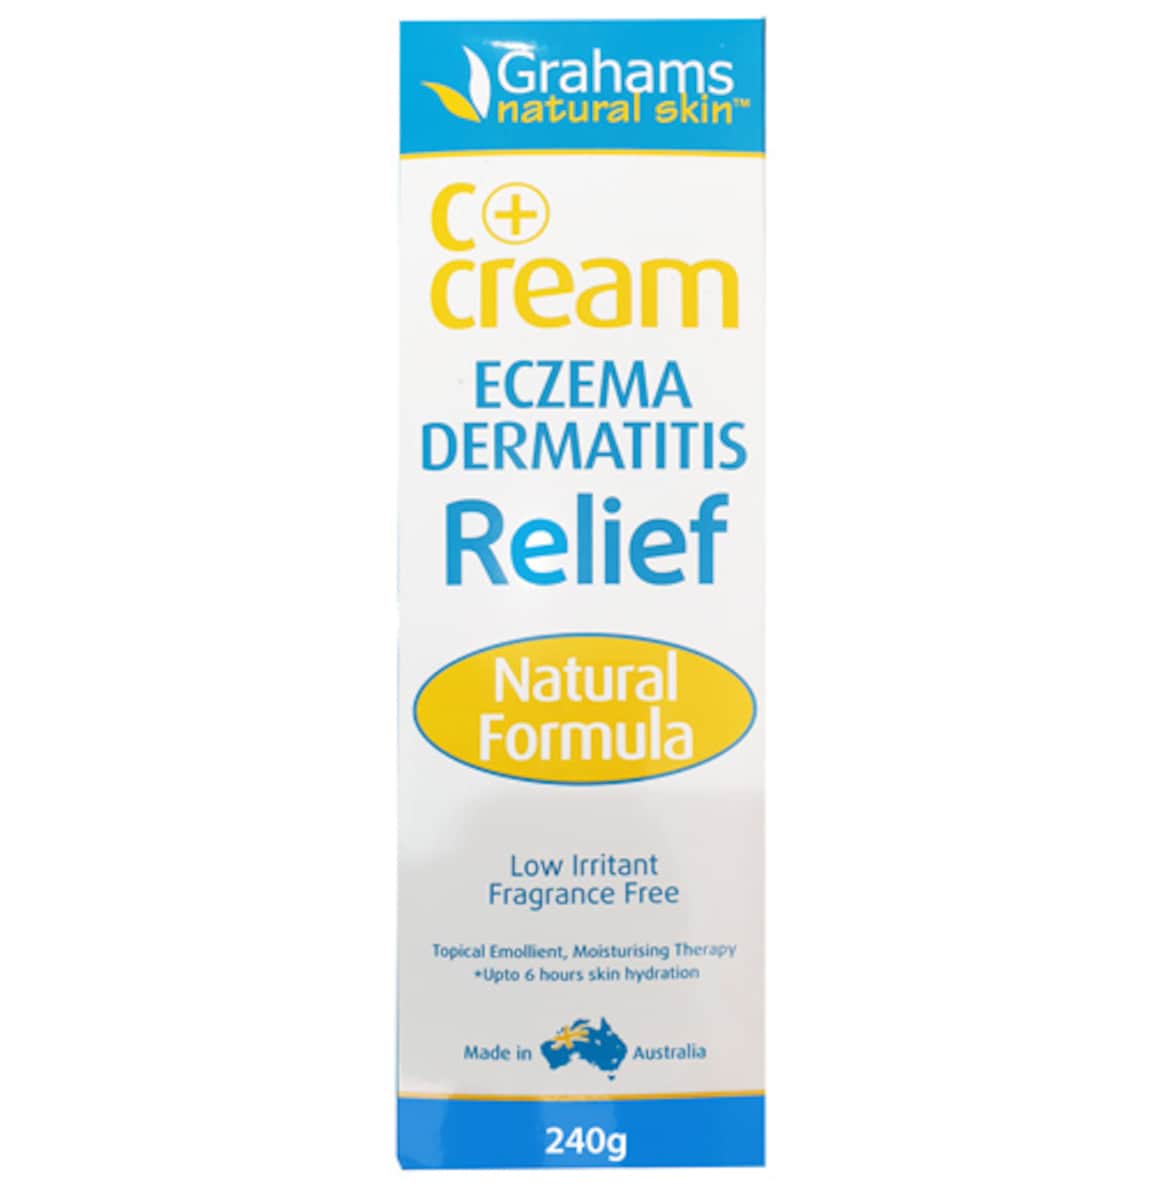 Grahams C+ Cream Eczema Dermatitis Relief 240g